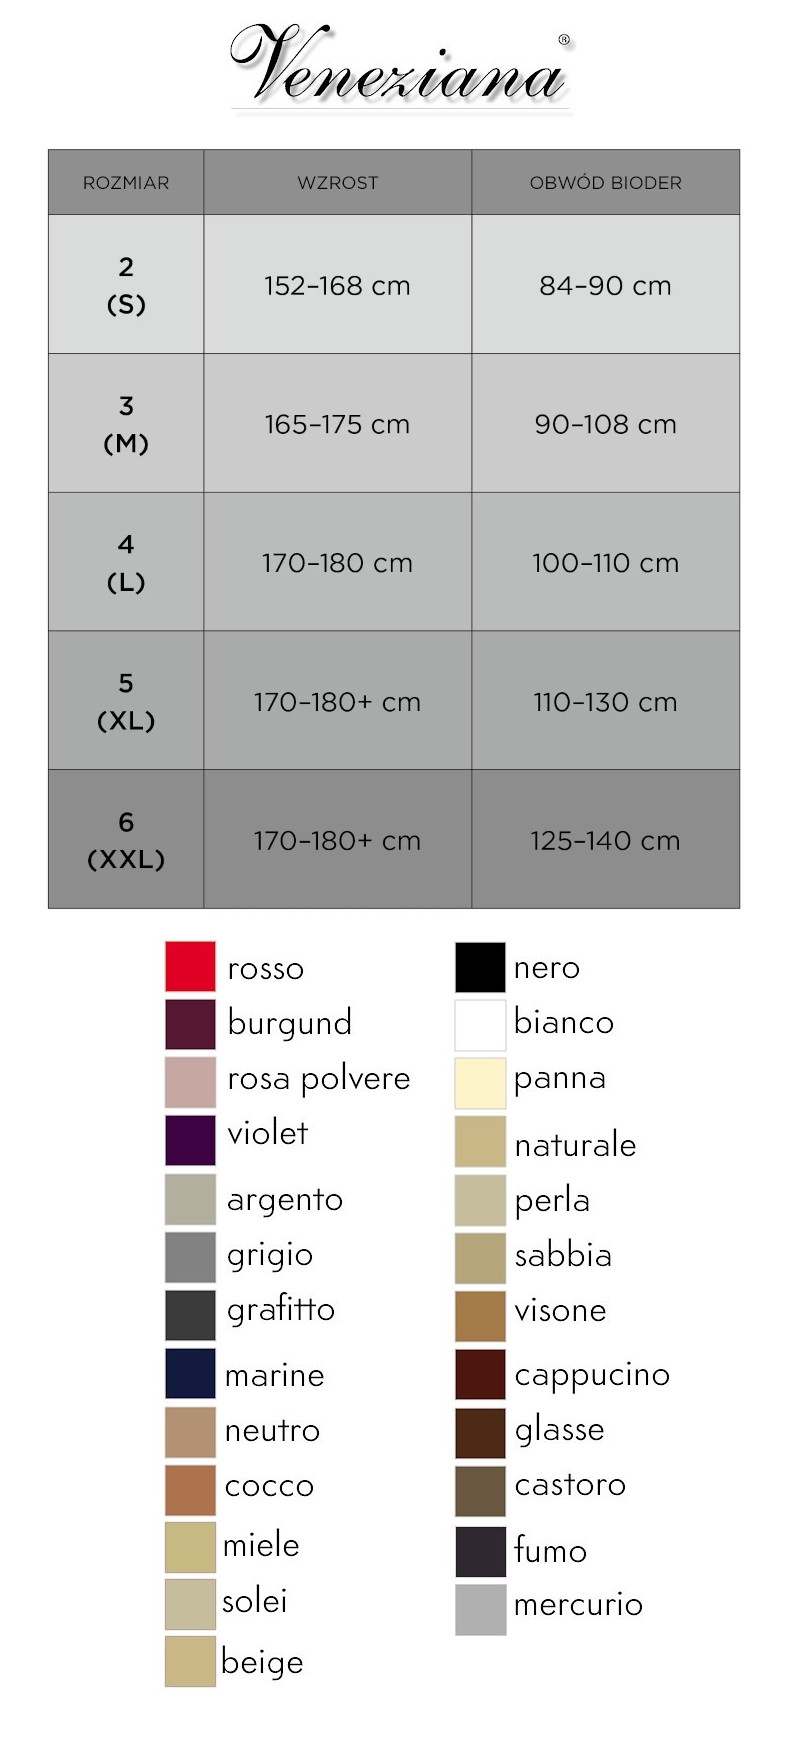 Veneziana size chart